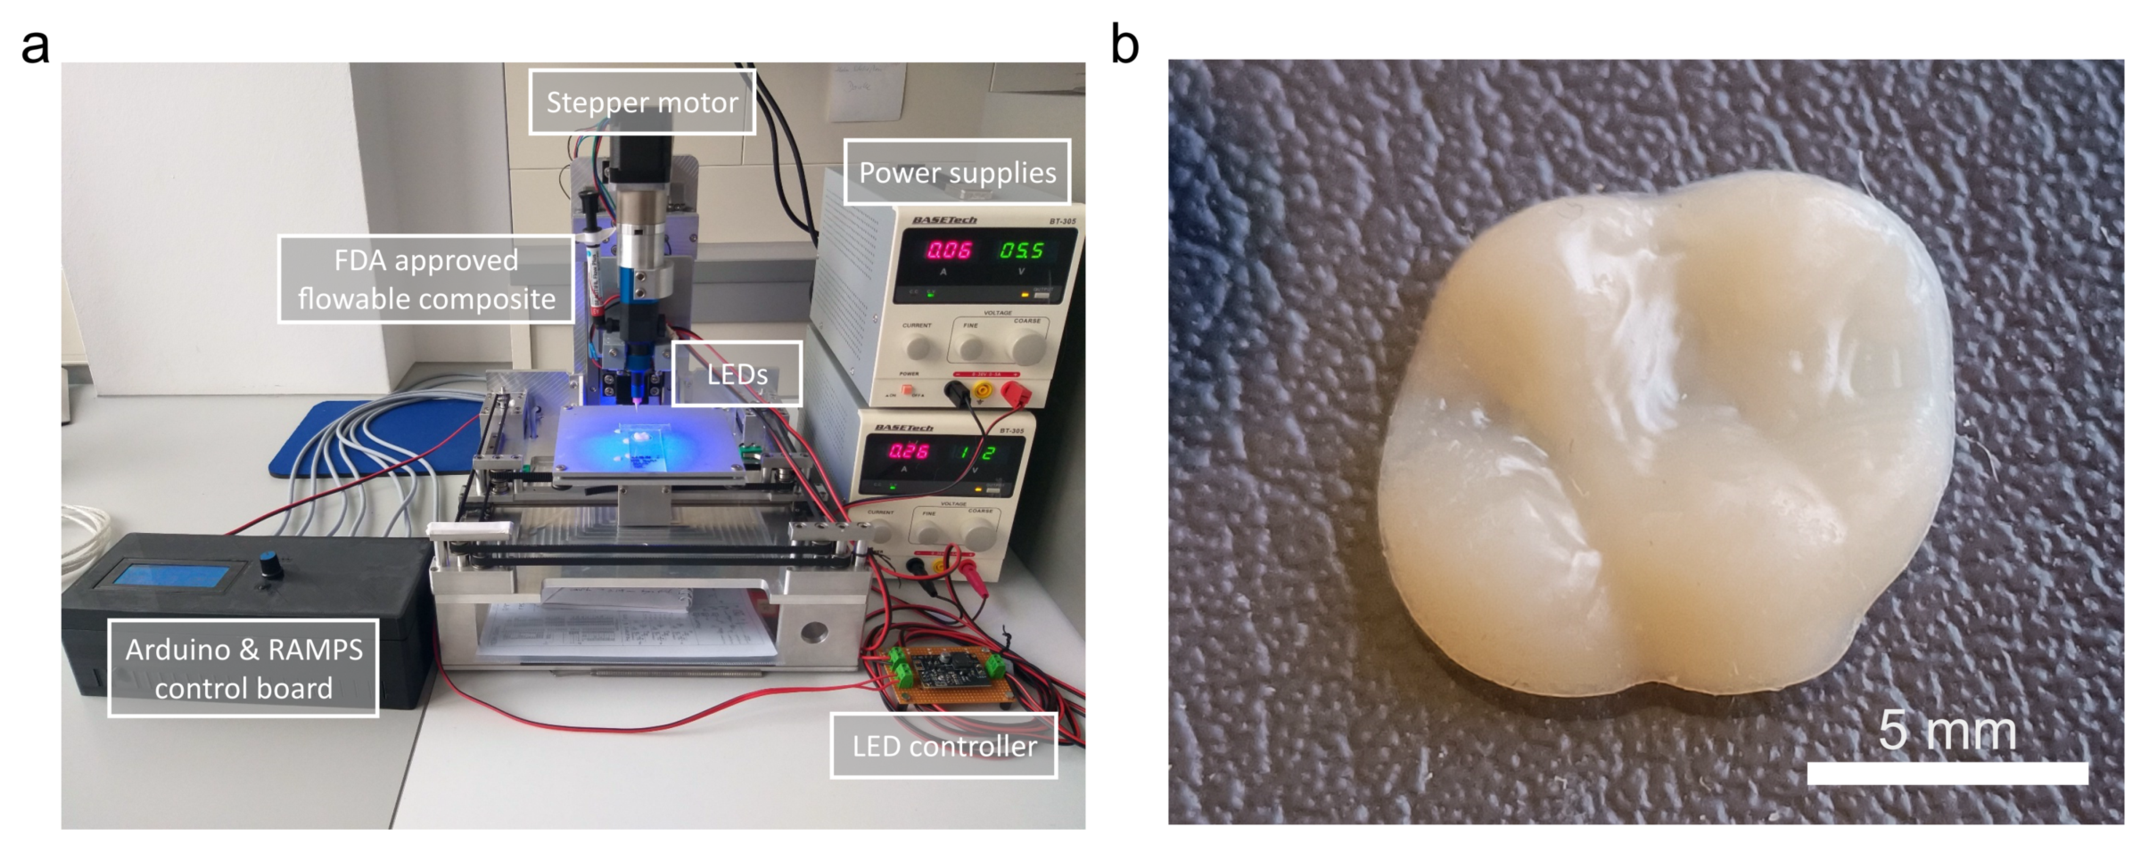 Neuartiger 3D-Drucker (a) und damit hergestellte künstliche Kaufläche aus Kompositwerkstoff (b)